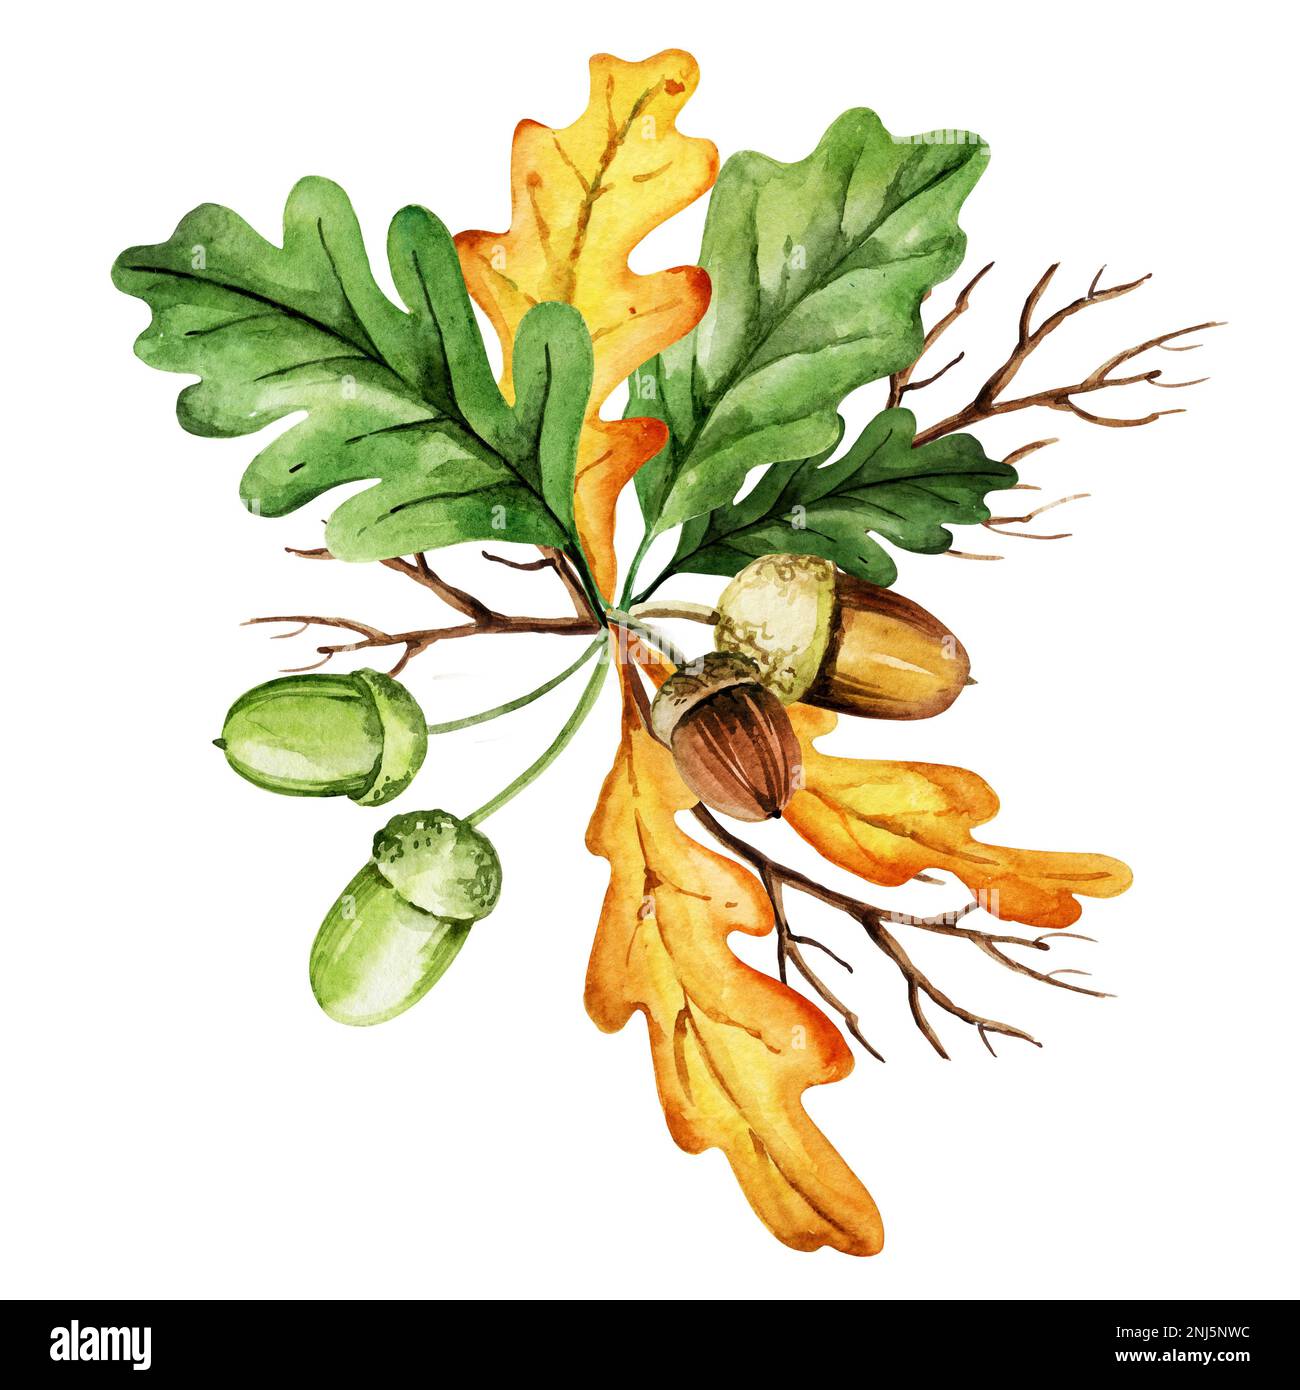 foglie di acquerello verde e giallo, ghiande e rami di quercia, composizione autunnale, disegno a mano, giallo, arancione, colore marrone Foto Stock